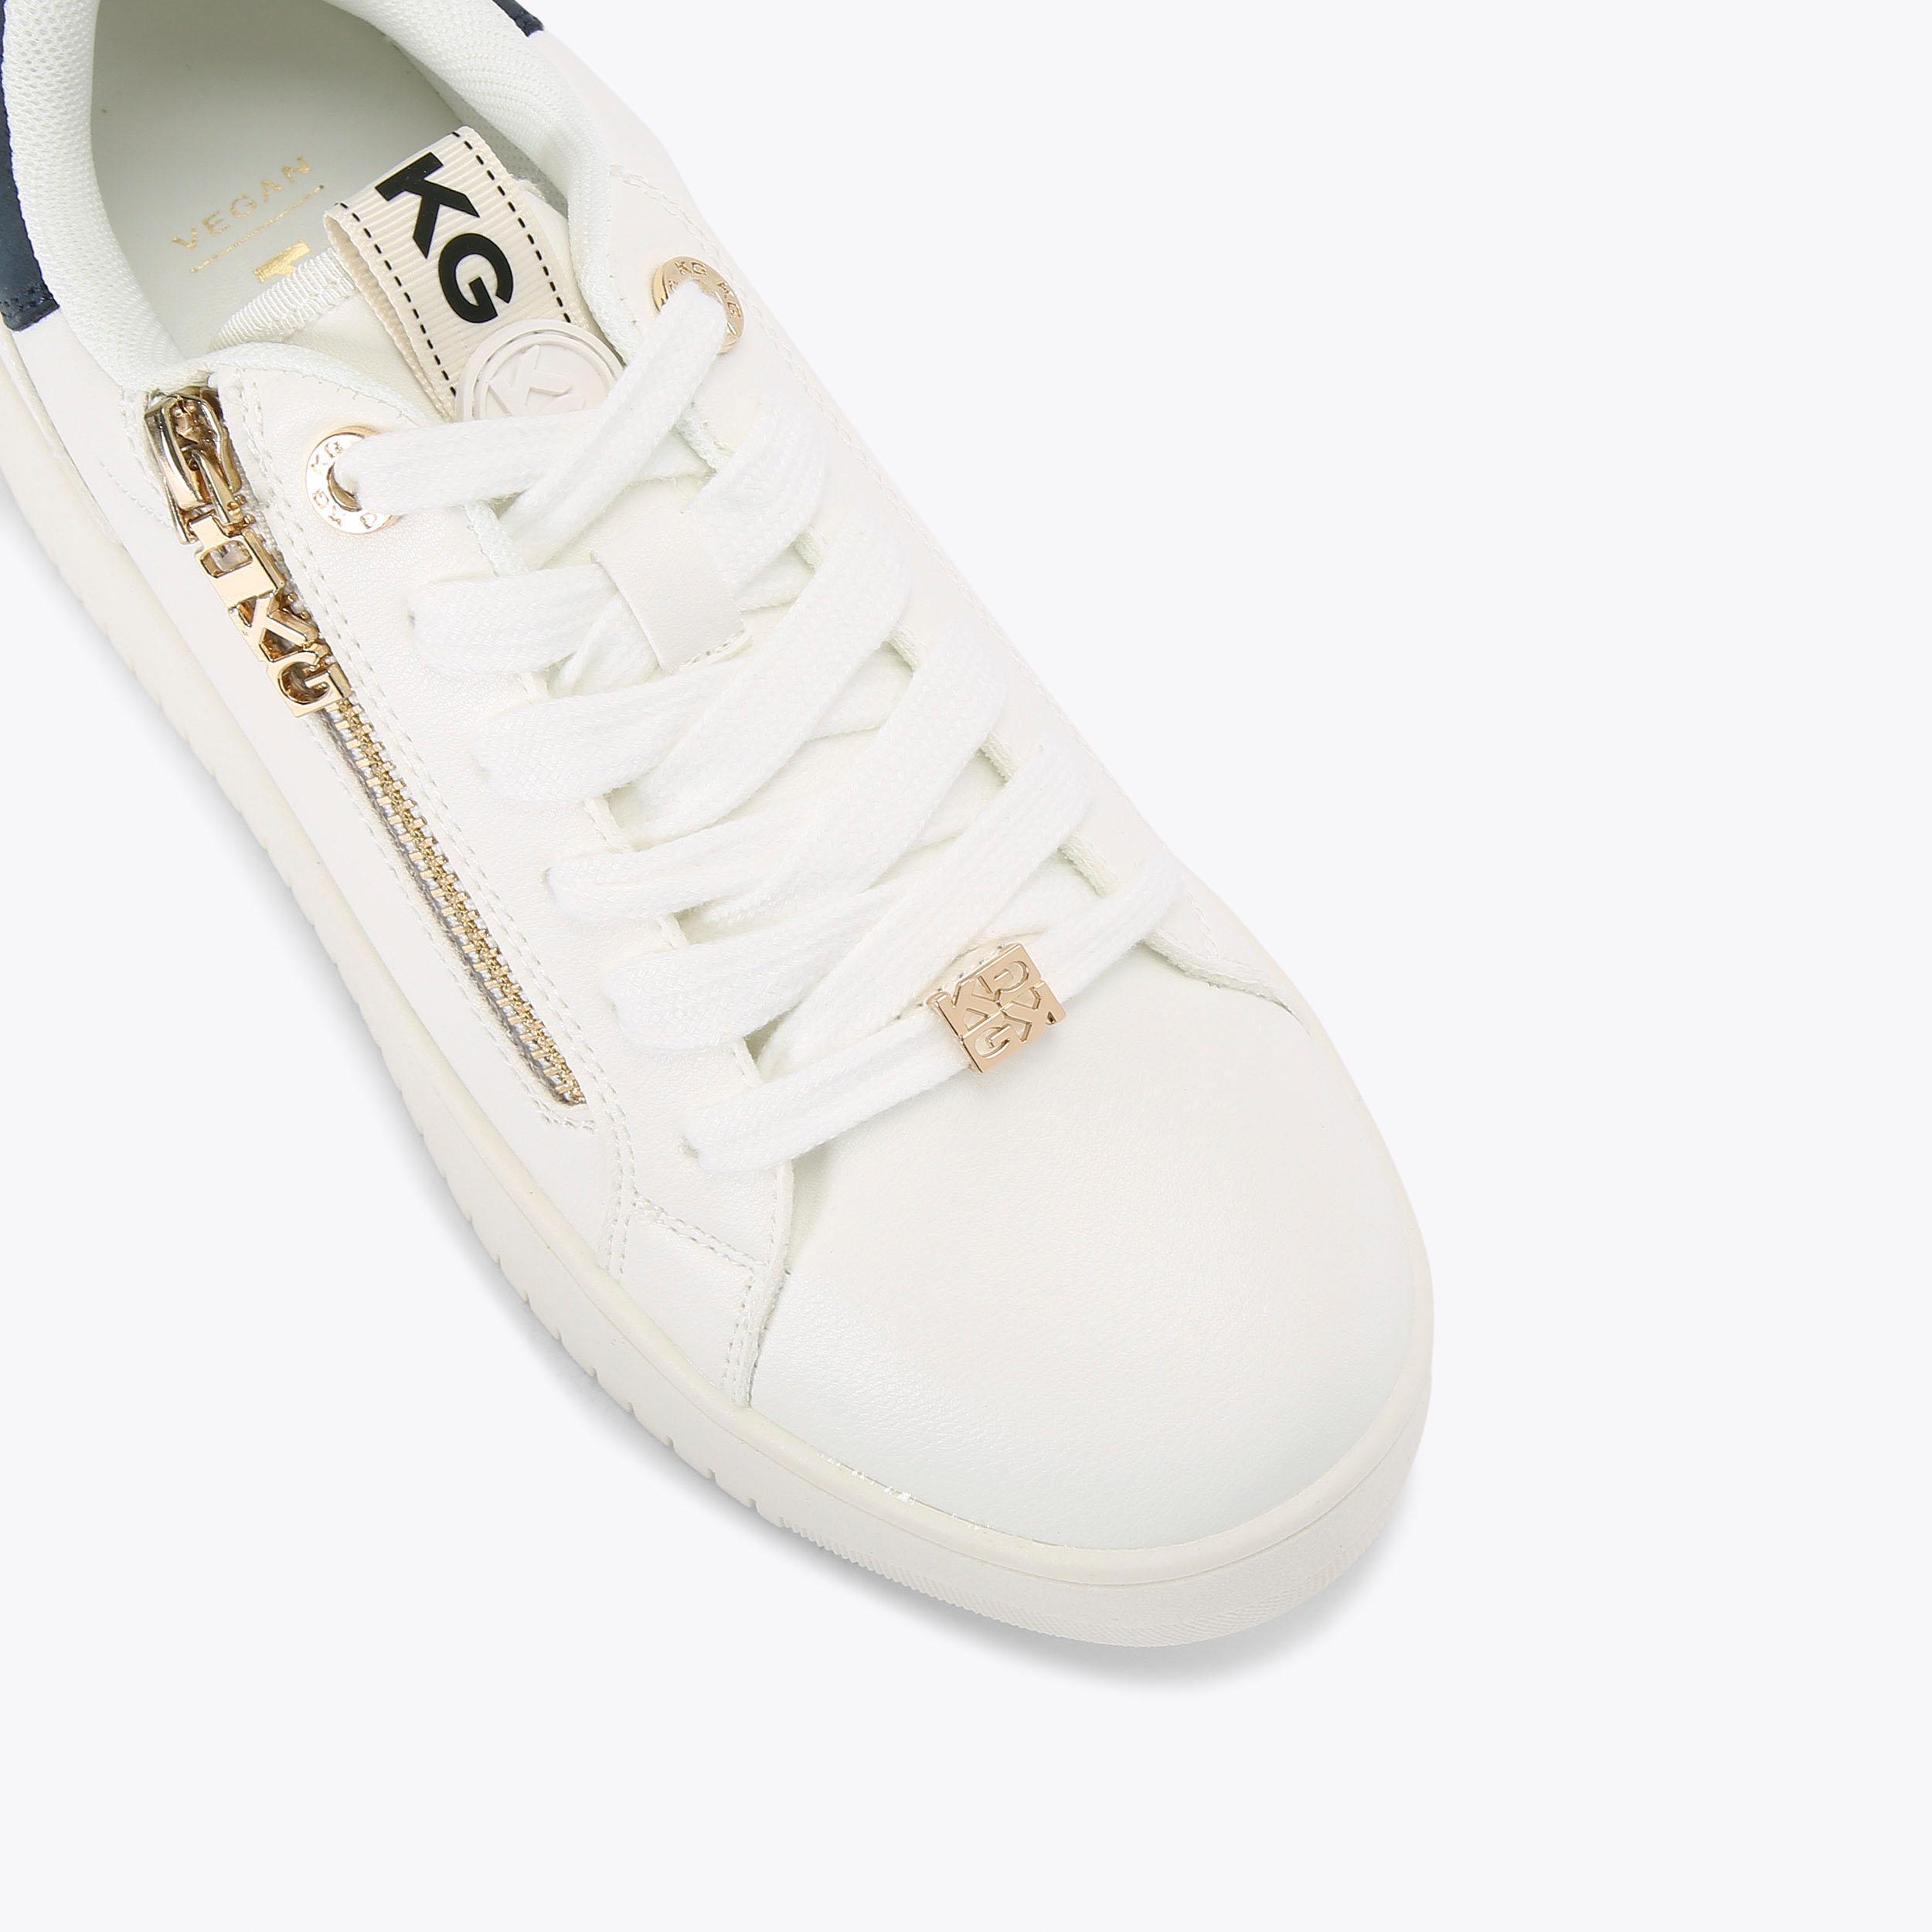 LESLIE SIDE ZIP White Zip Up Sneaker by KG KURT GEIGER